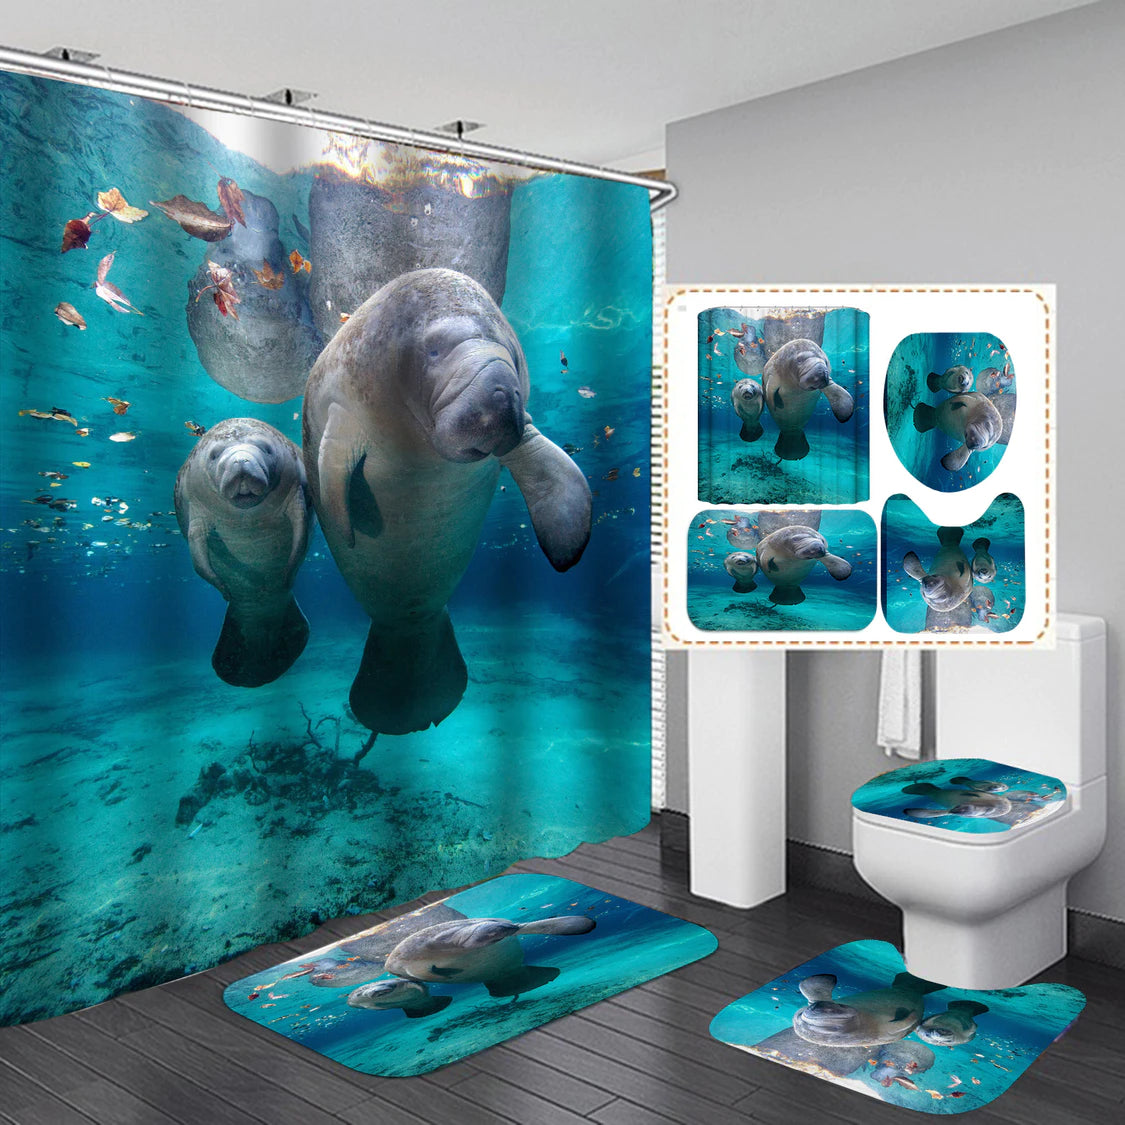 Cuscino per sedile WC Set di tende da doccia impermeabili Tappetino per WC oceanico Tappetino da bagno antiscivolo e confortevole 